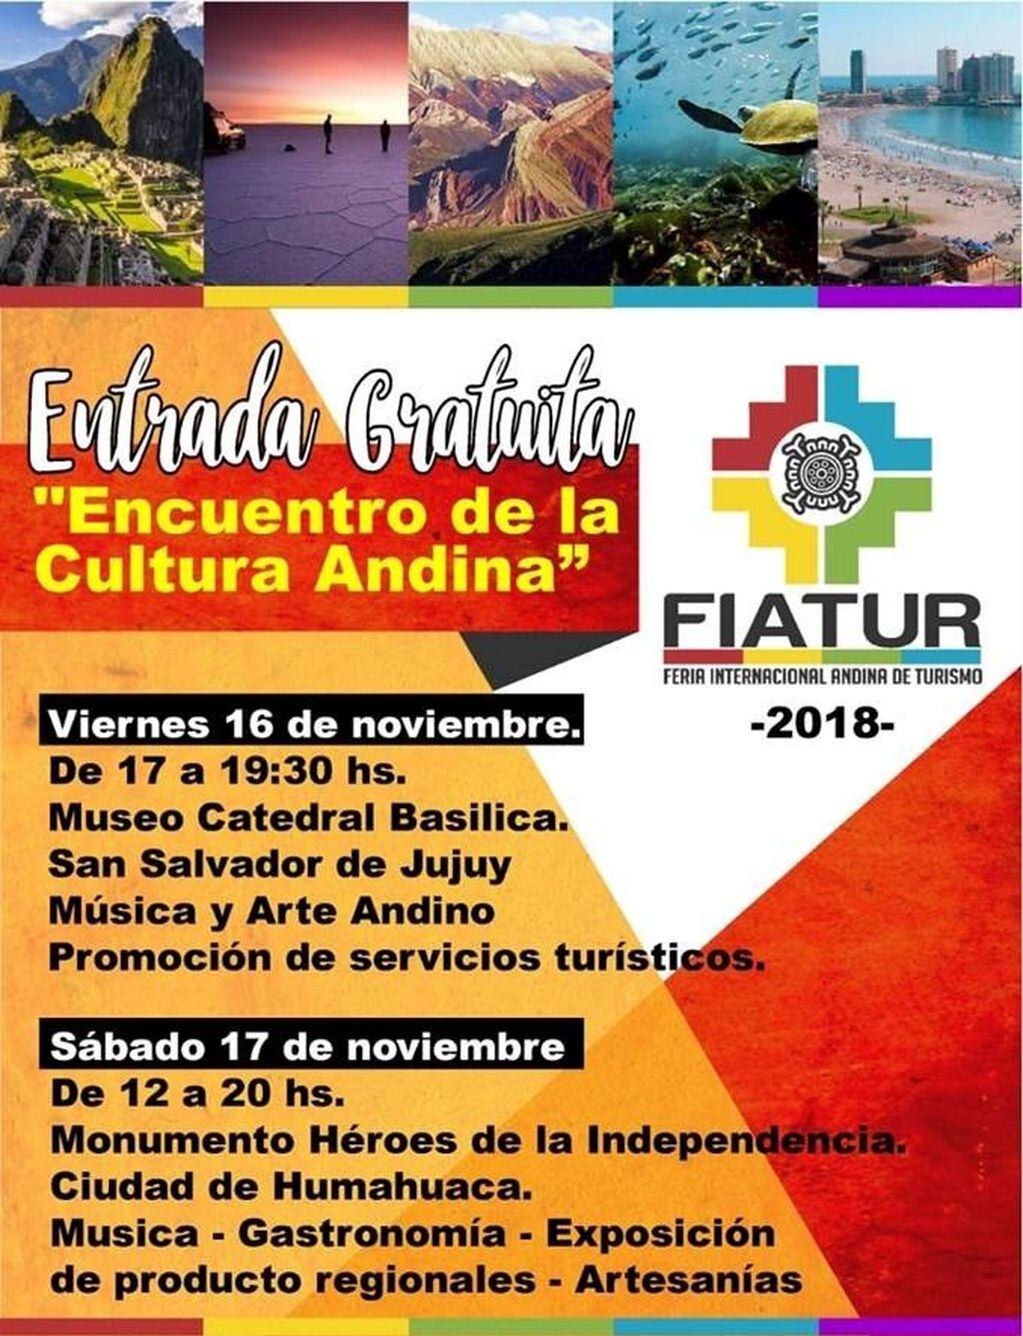 Banner ilustrativo sobre las actividades programadas para el "Encuentro de la Cultura Andina", en el marco de la FIATUR 2018.